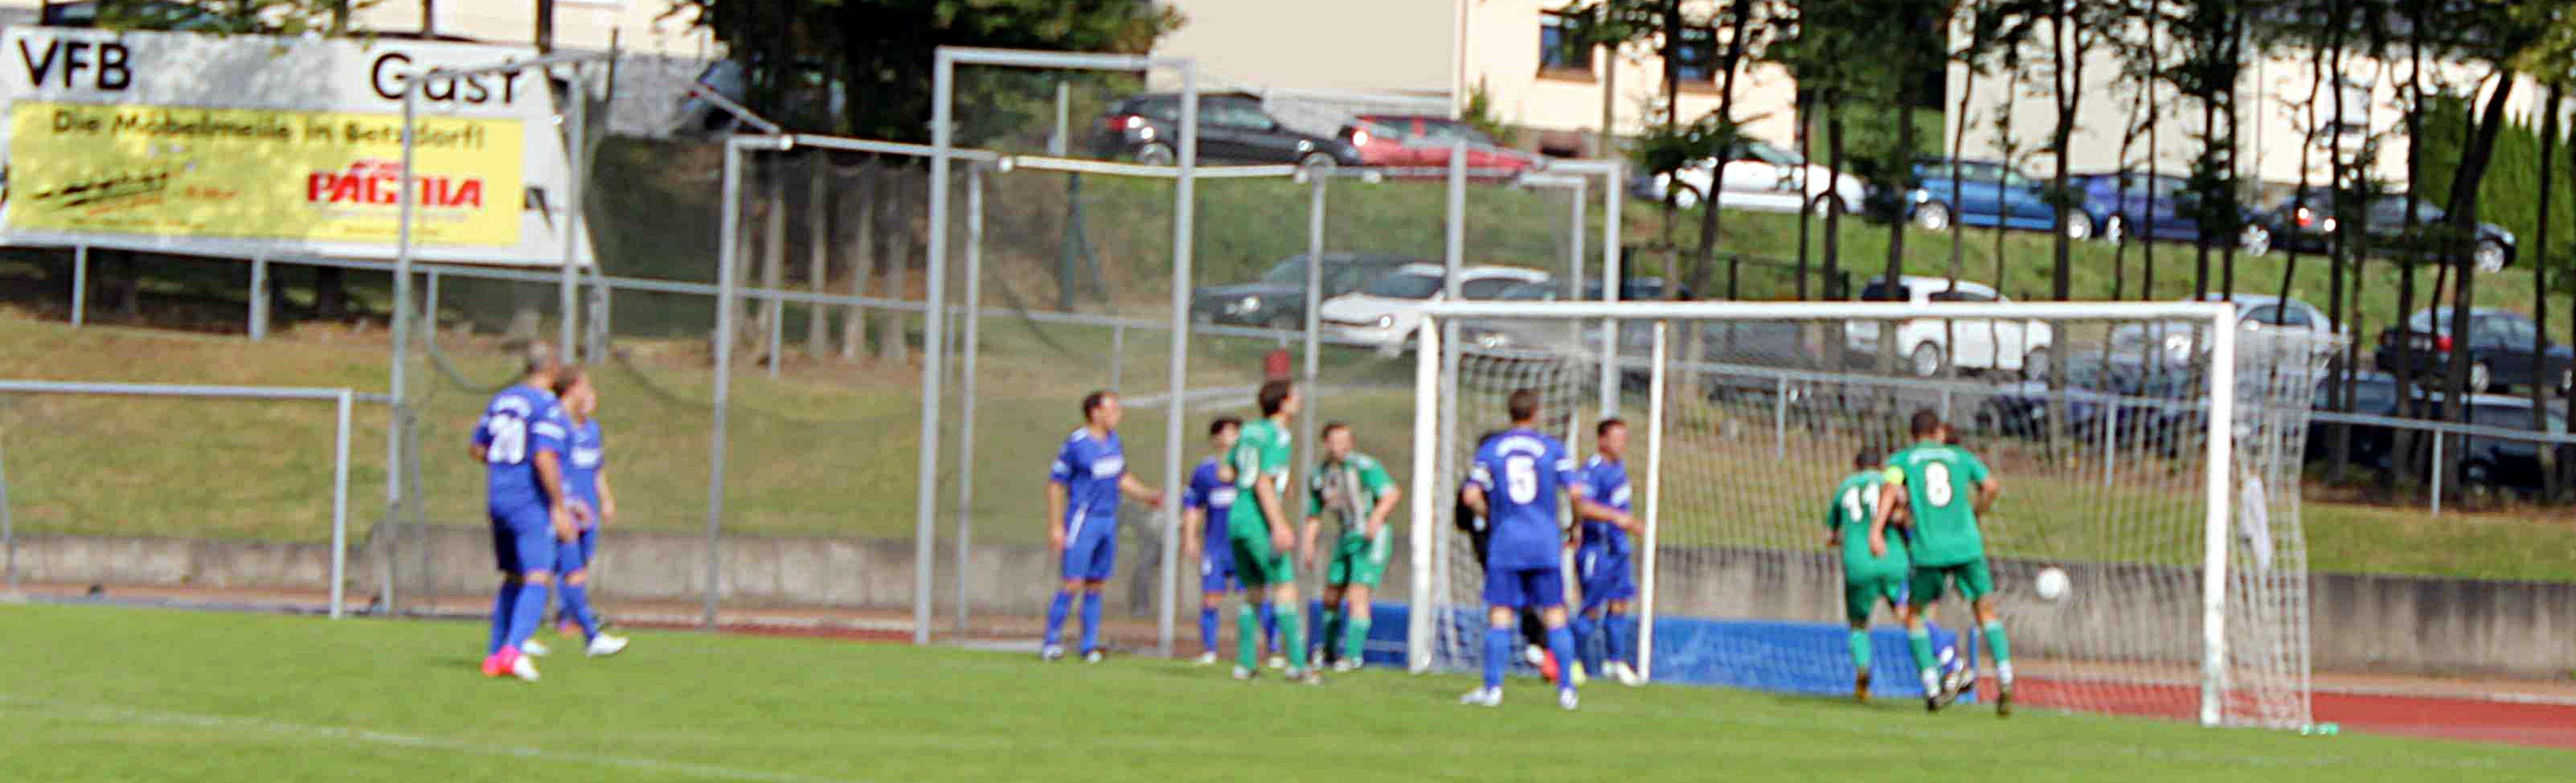 2012-09-02_Wissen-VfB